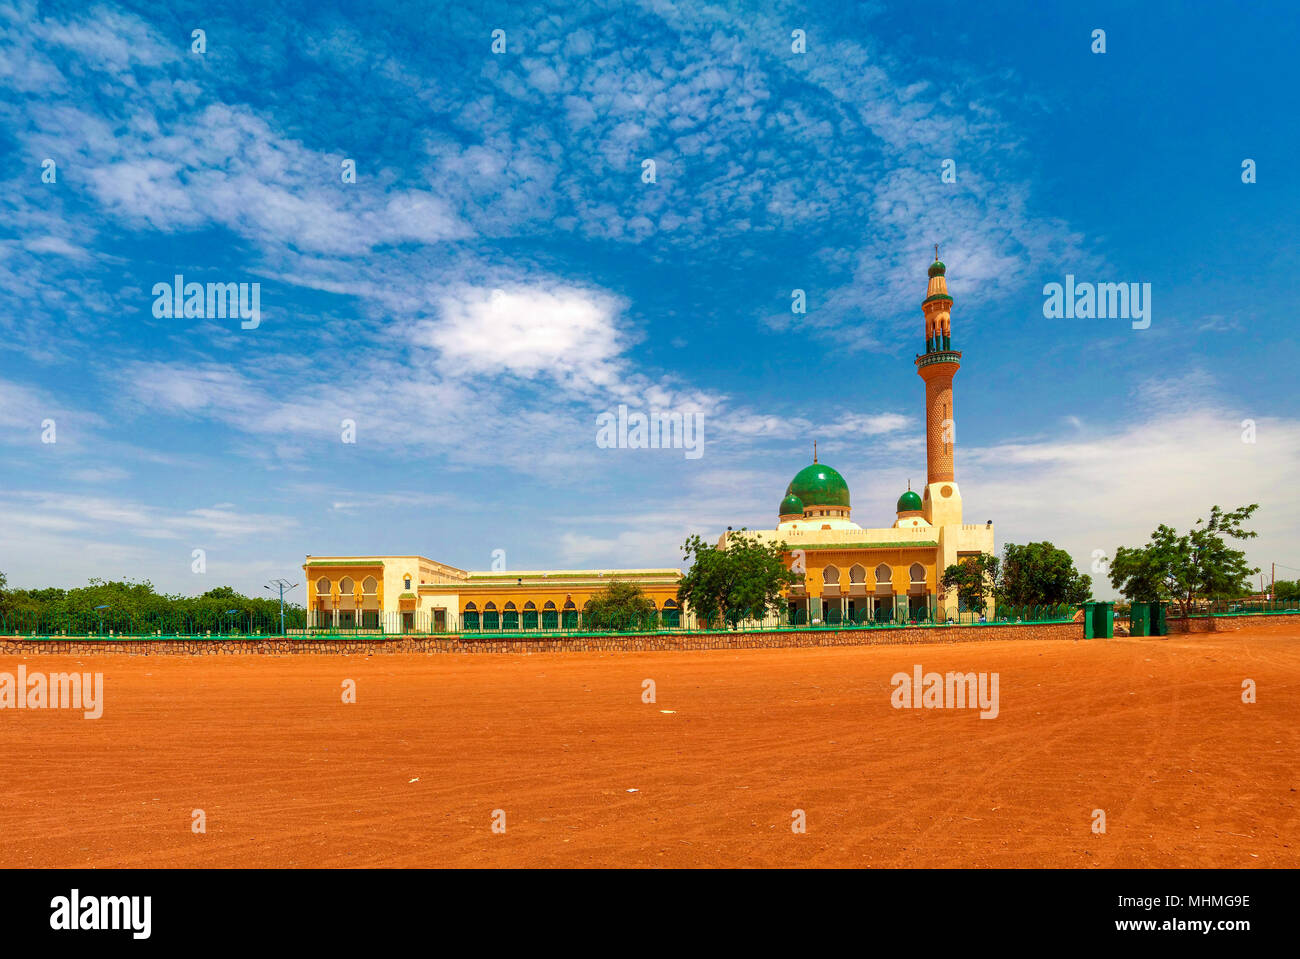 Vue extérieure de la Grande Mosquée de Niamey, financé avec l'argent du gouvernement libyen de Kadhafi, Niamey, Niger Banque D'Images